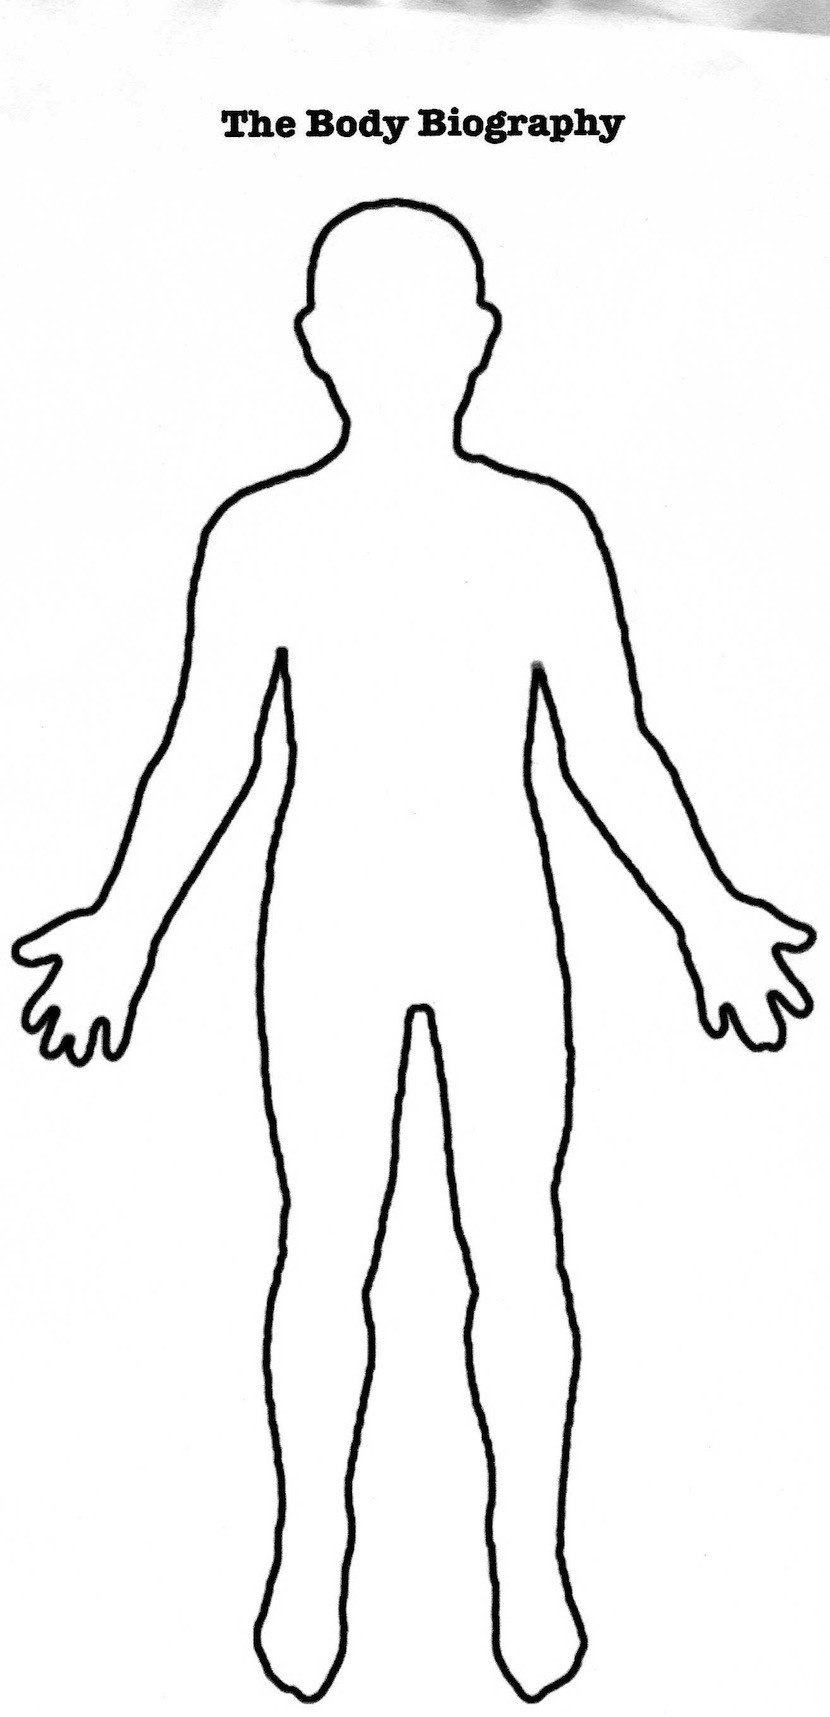 Human Body Outline Printable Human Body Outline Printable Cliparts